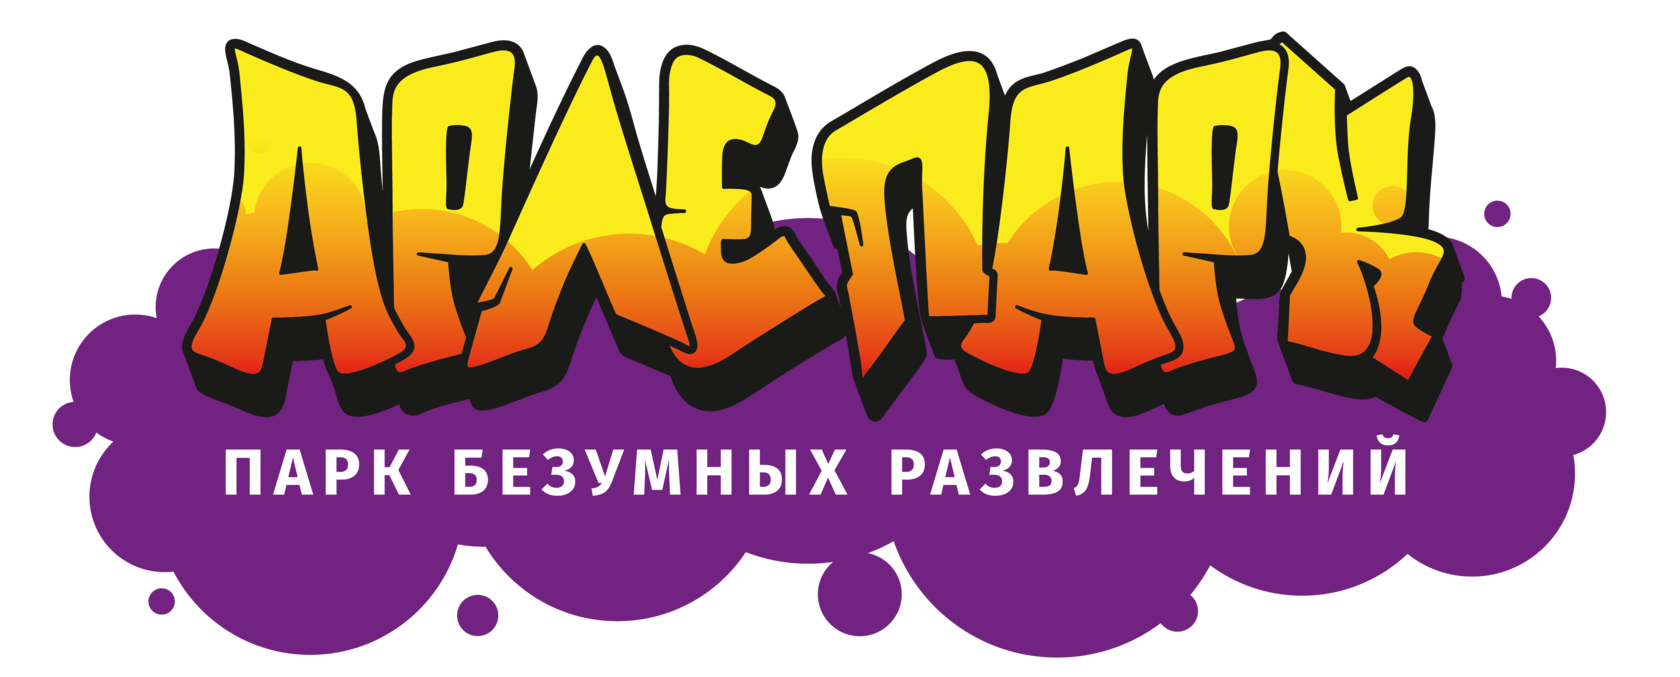 Арлепарк - парк безумных развлечений в Калиниграде